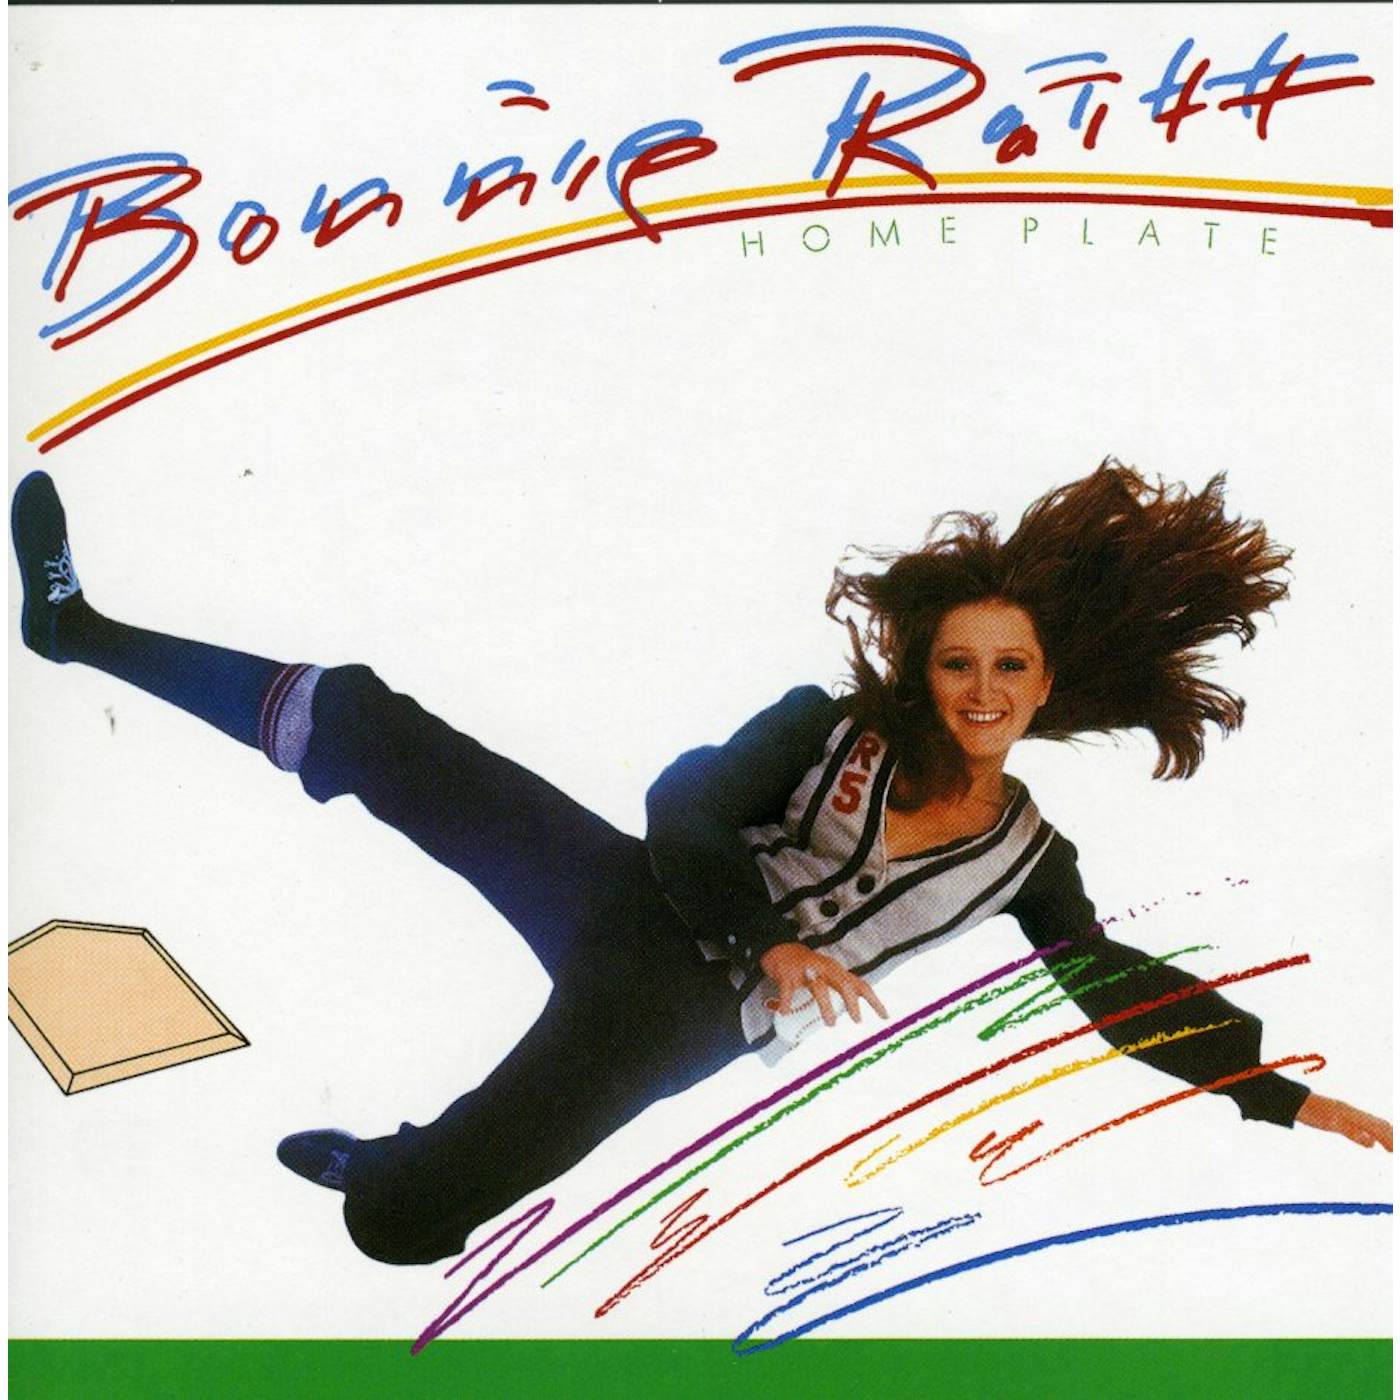 Bonnie Raitt HOME PLATE CD